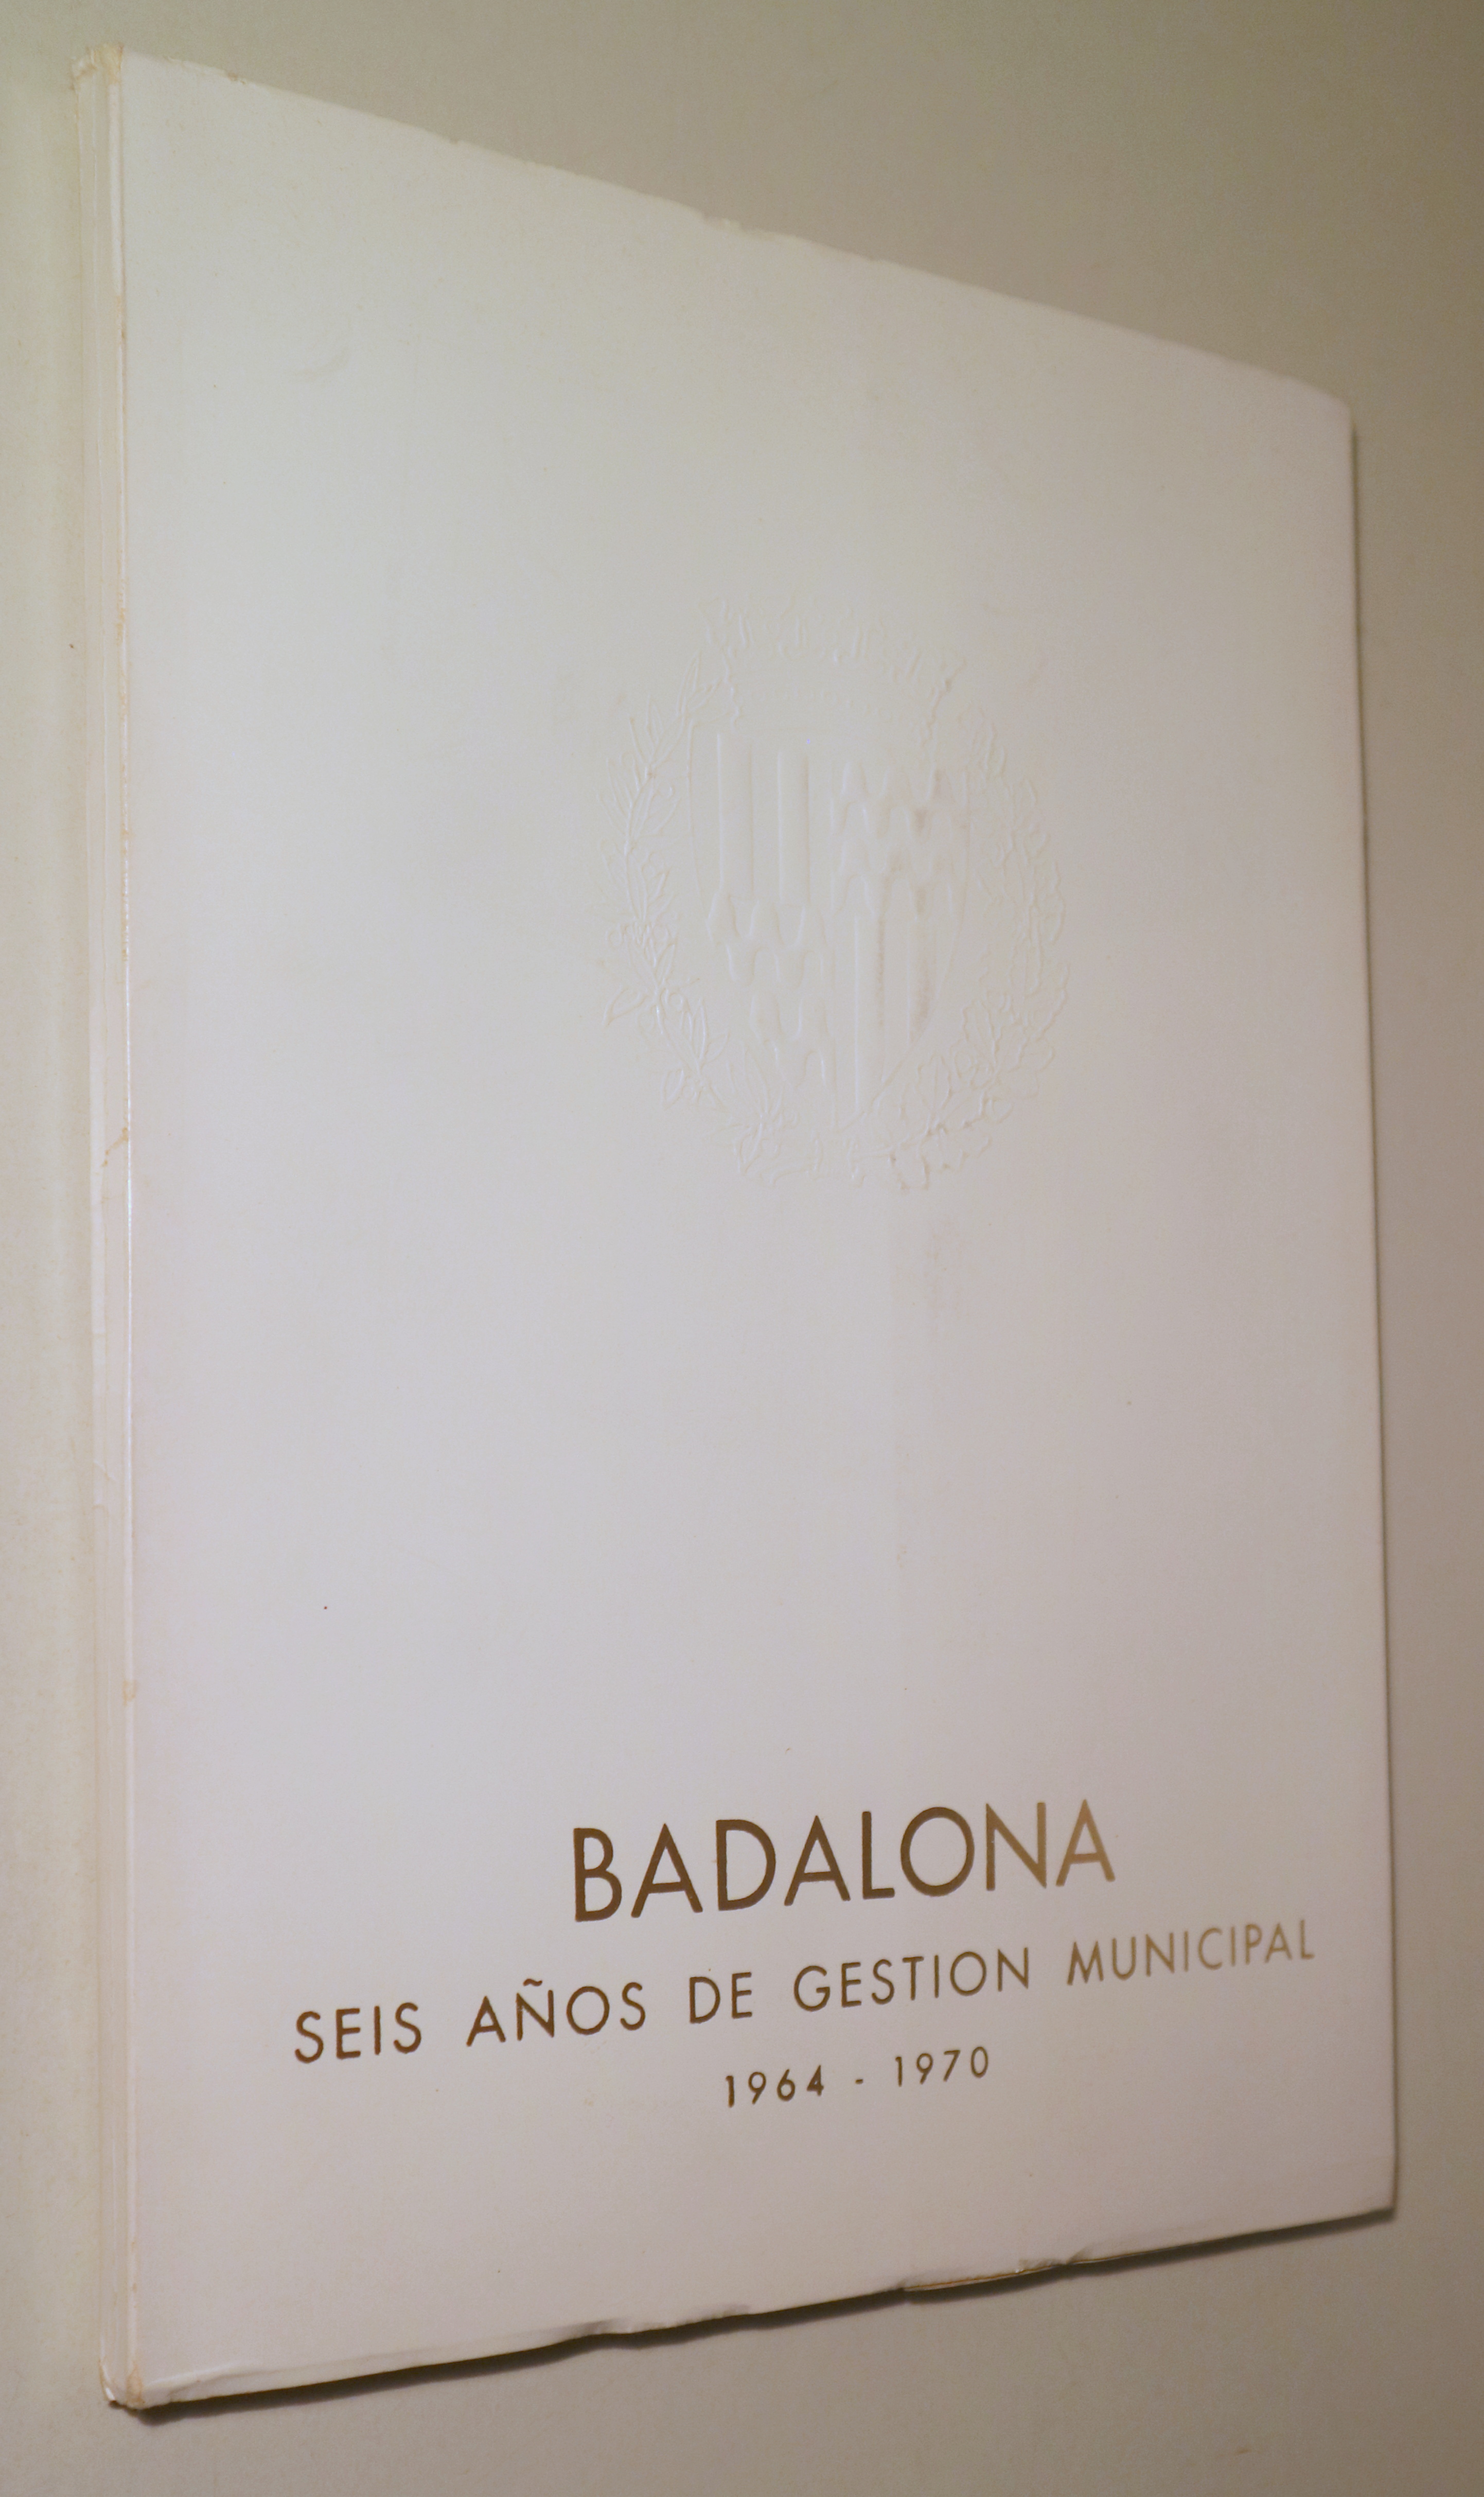 BADALONA SEIS AÑOS DE GESTIÓN MUNICIPAL 1964-1970 - Badalona  1970 - Ilustrado